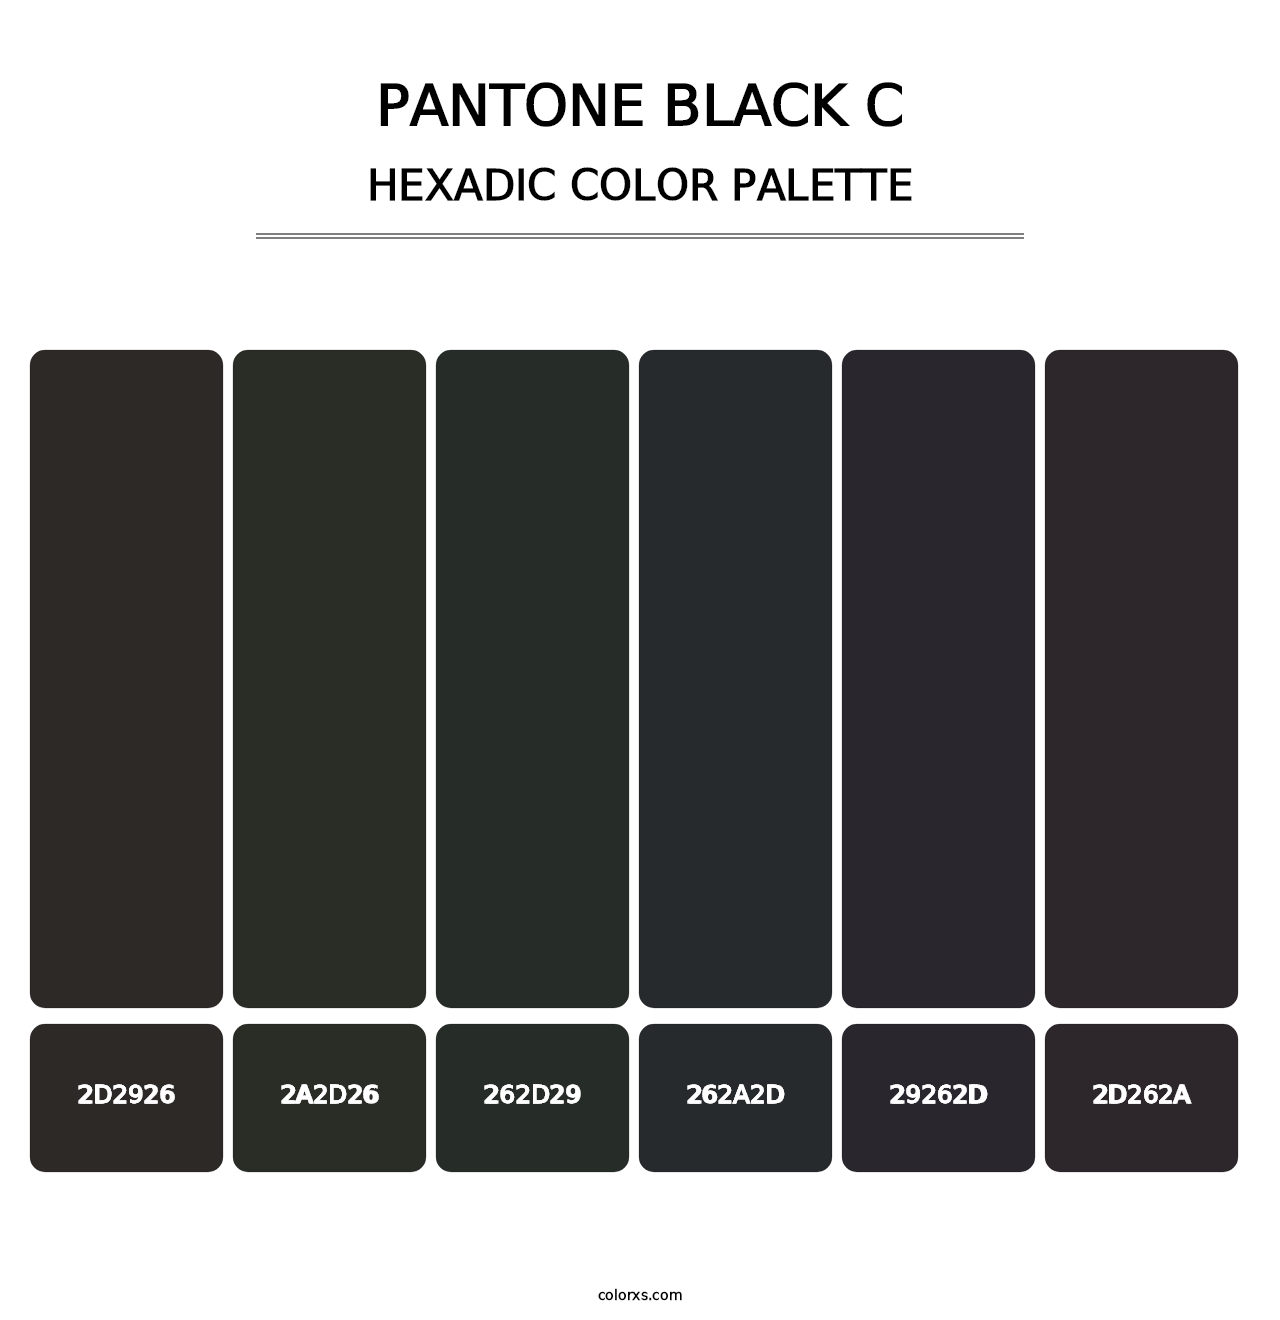 PANTONE Black C - Hexadic Color Palette